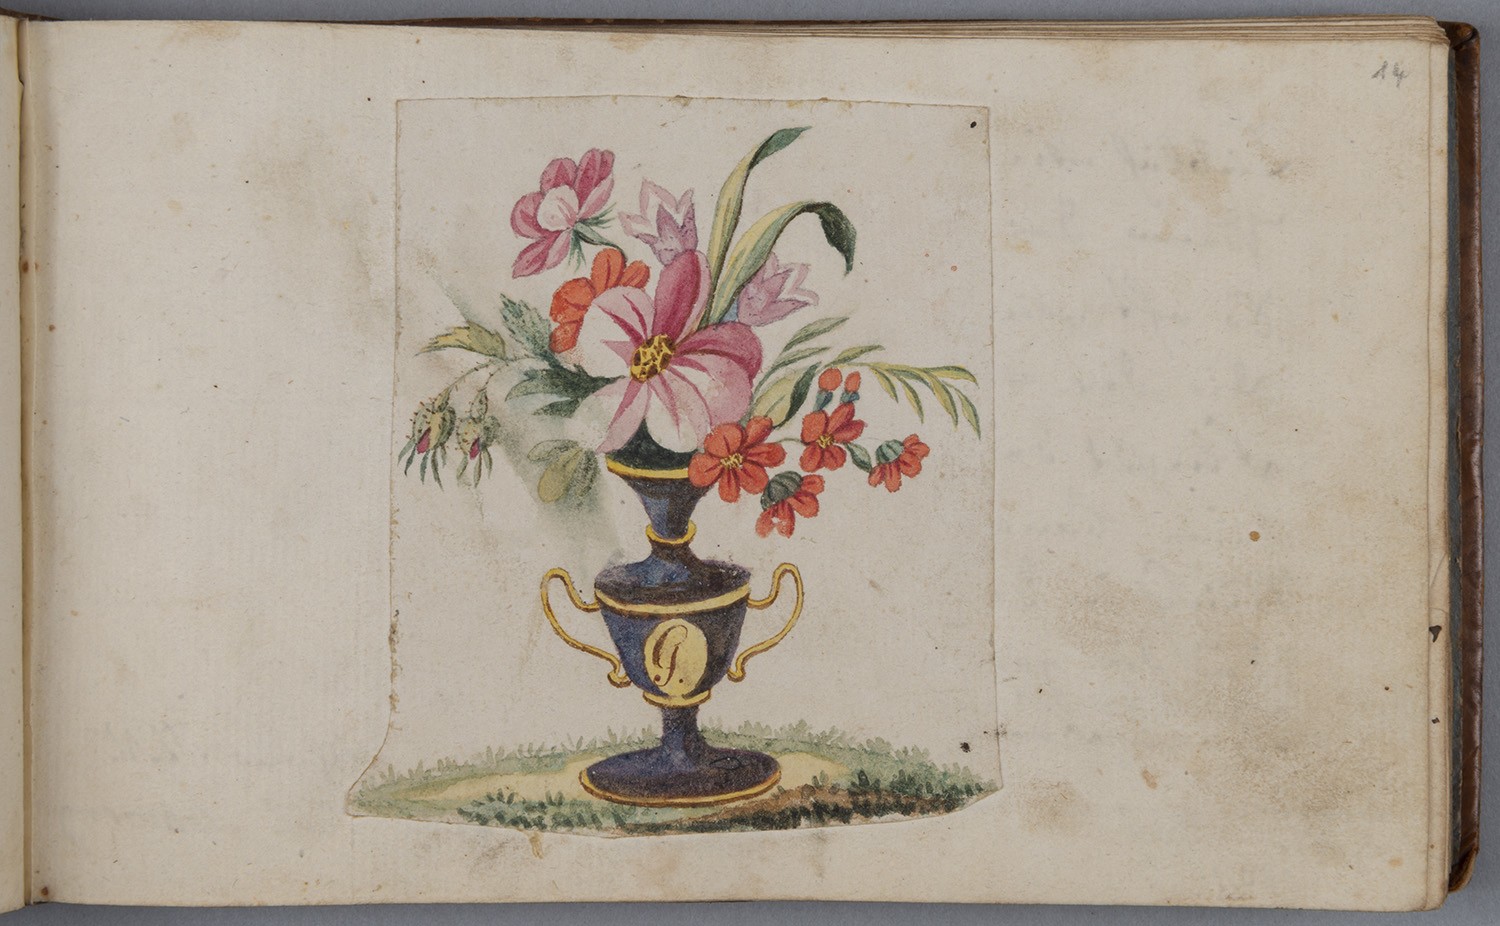 Blumenstrauß in Freundschaftsvase (Landesgeschichtliche Vereinigung für die Mark Brandenburg e.V., Archiv CC BY)